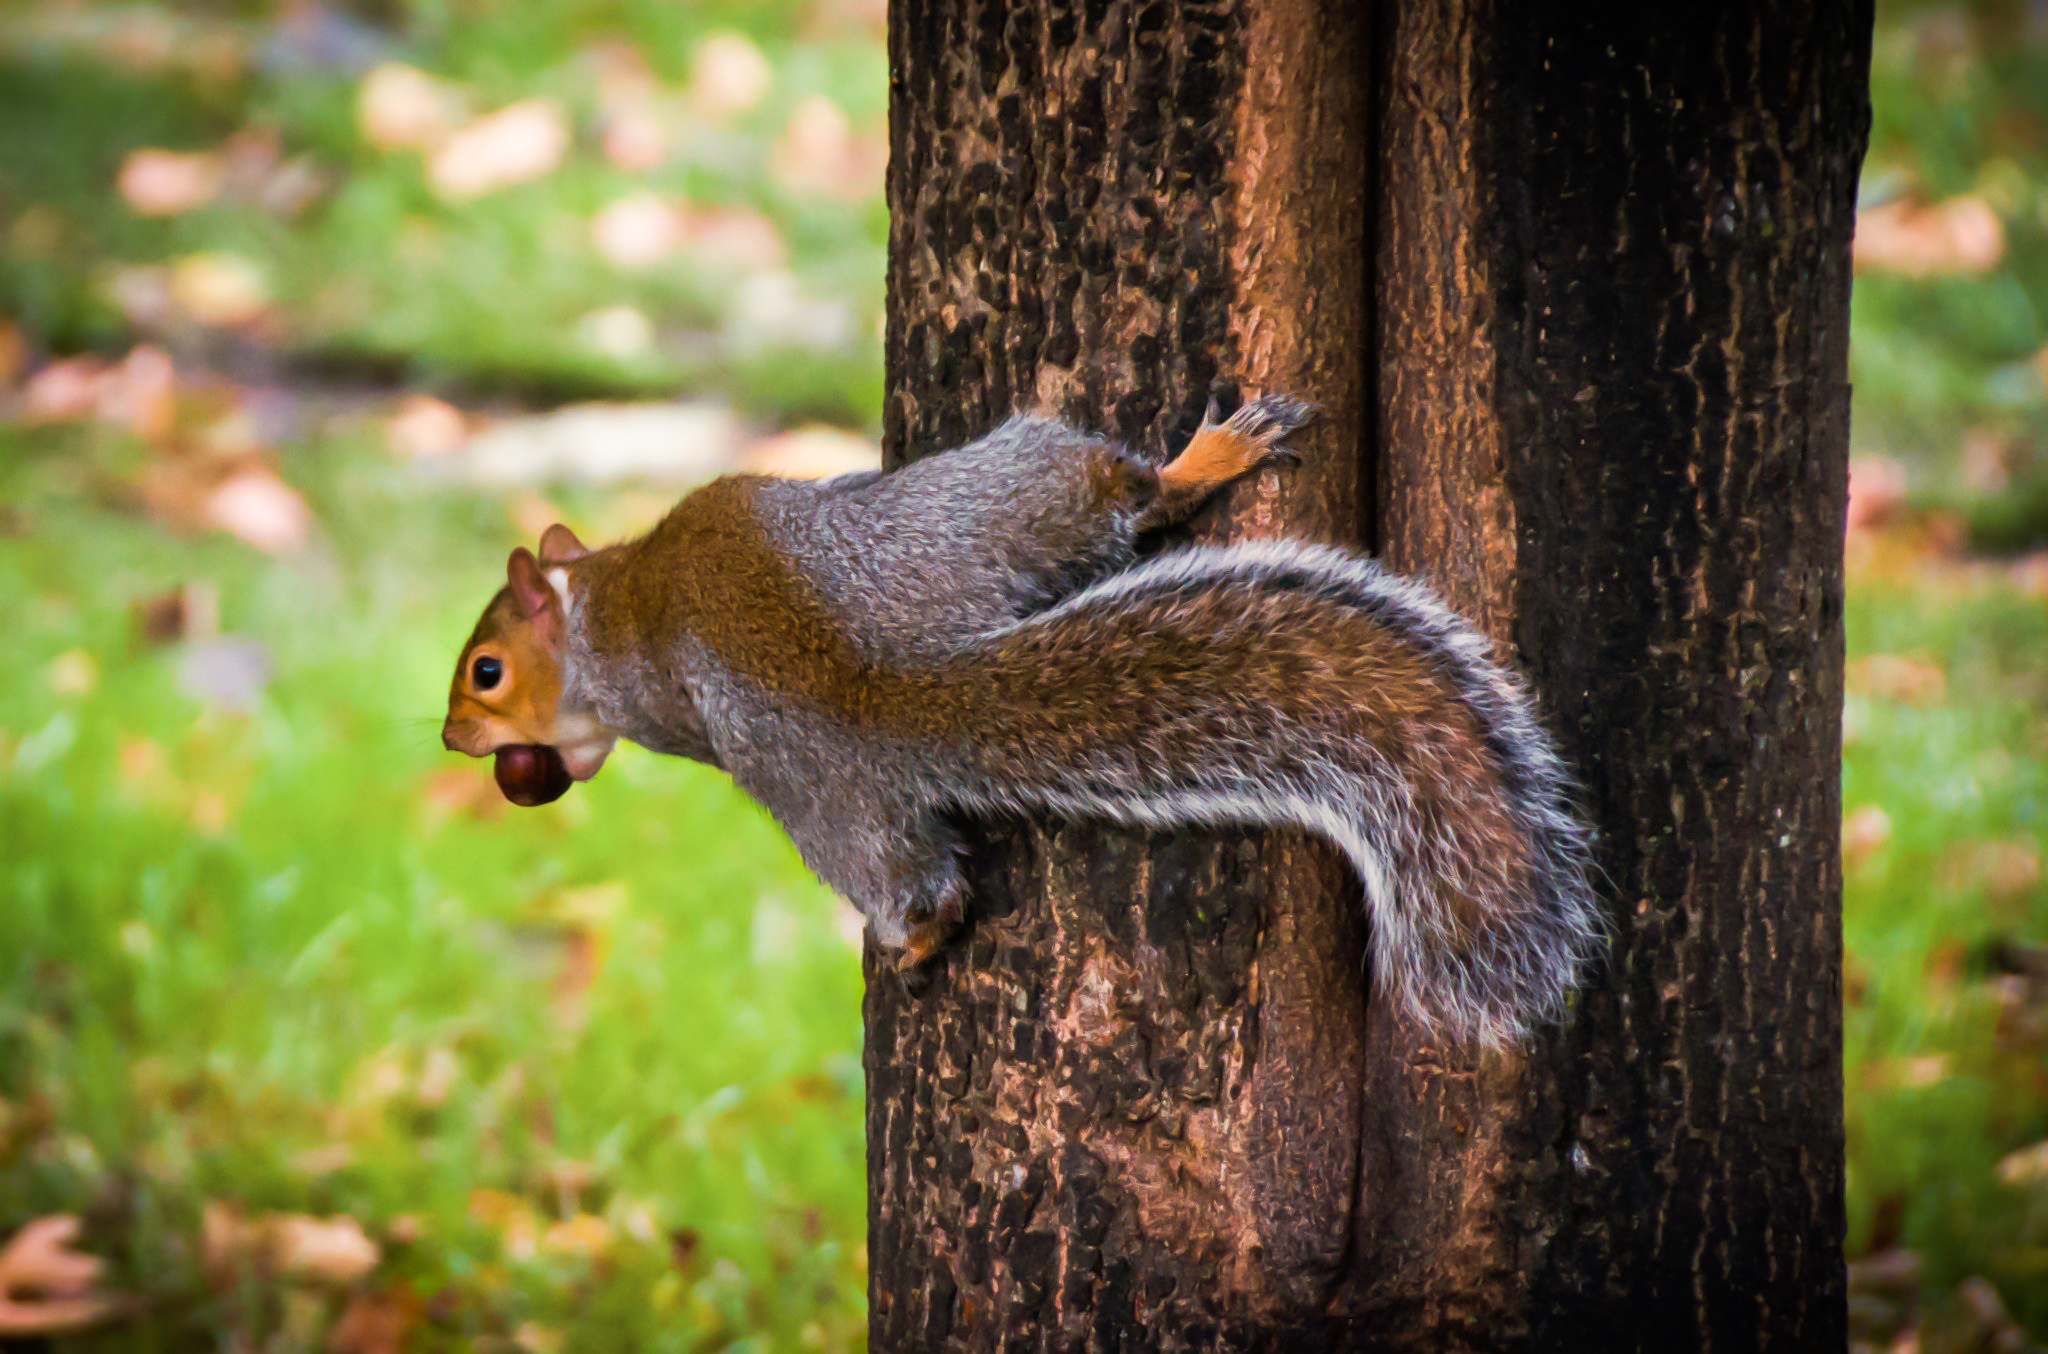 Hyde Park Squirrel 4 by BubbaTheGecko